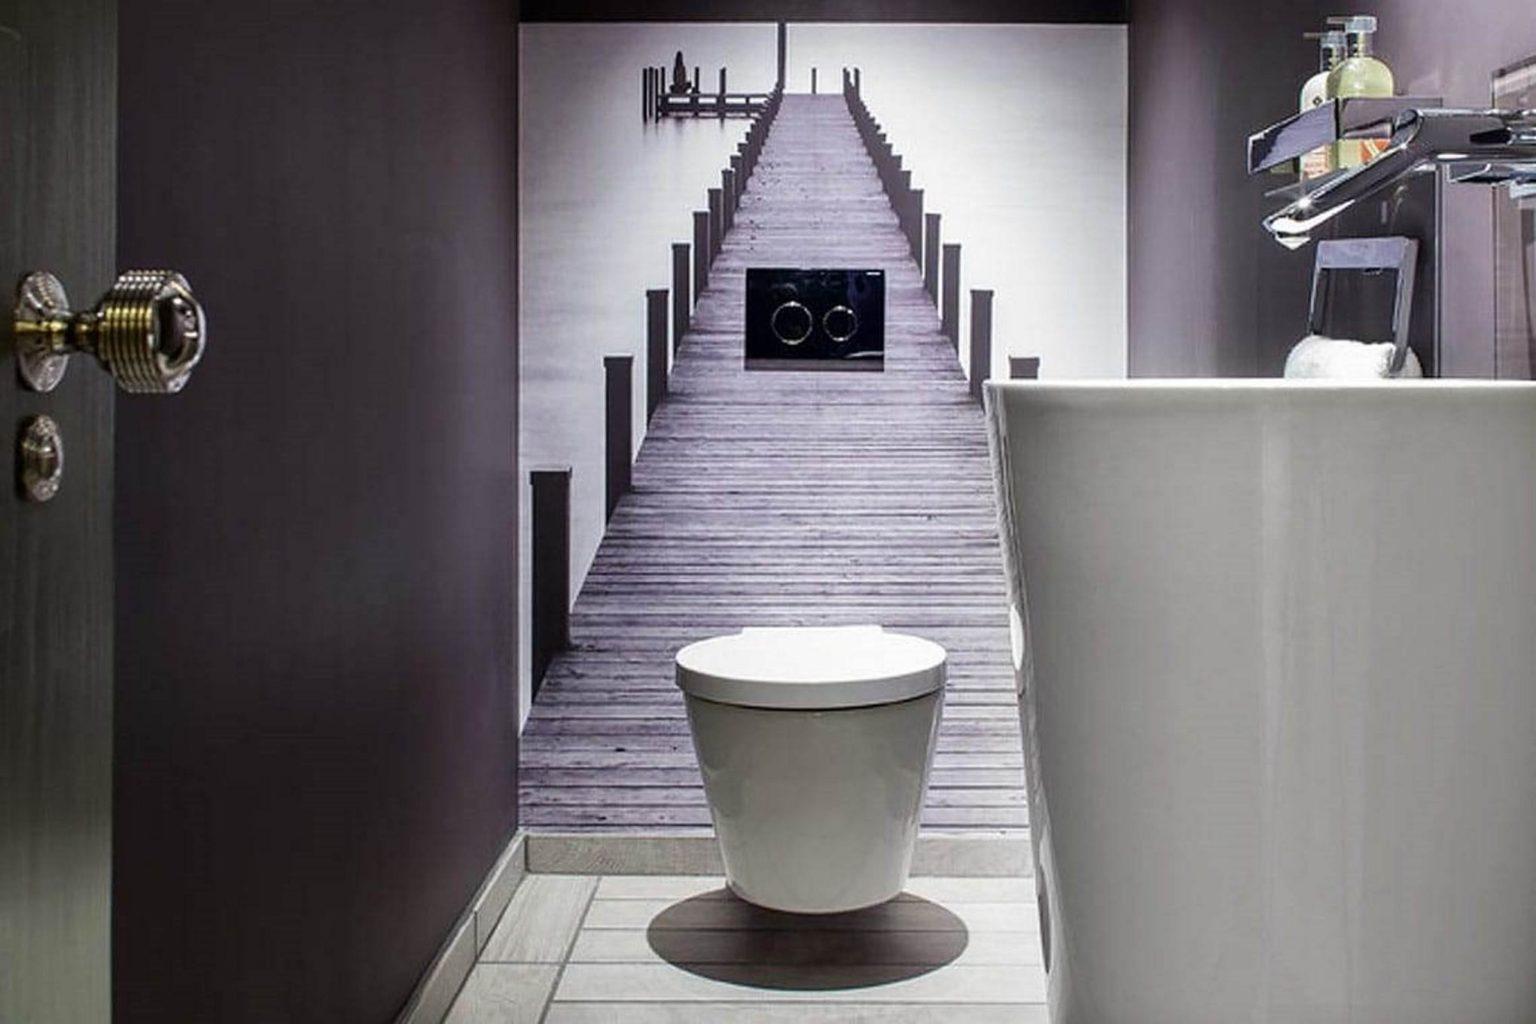 Гармоничный дизайн с помощью простых материалов: лучшие фото интерьеров туалета с обоями